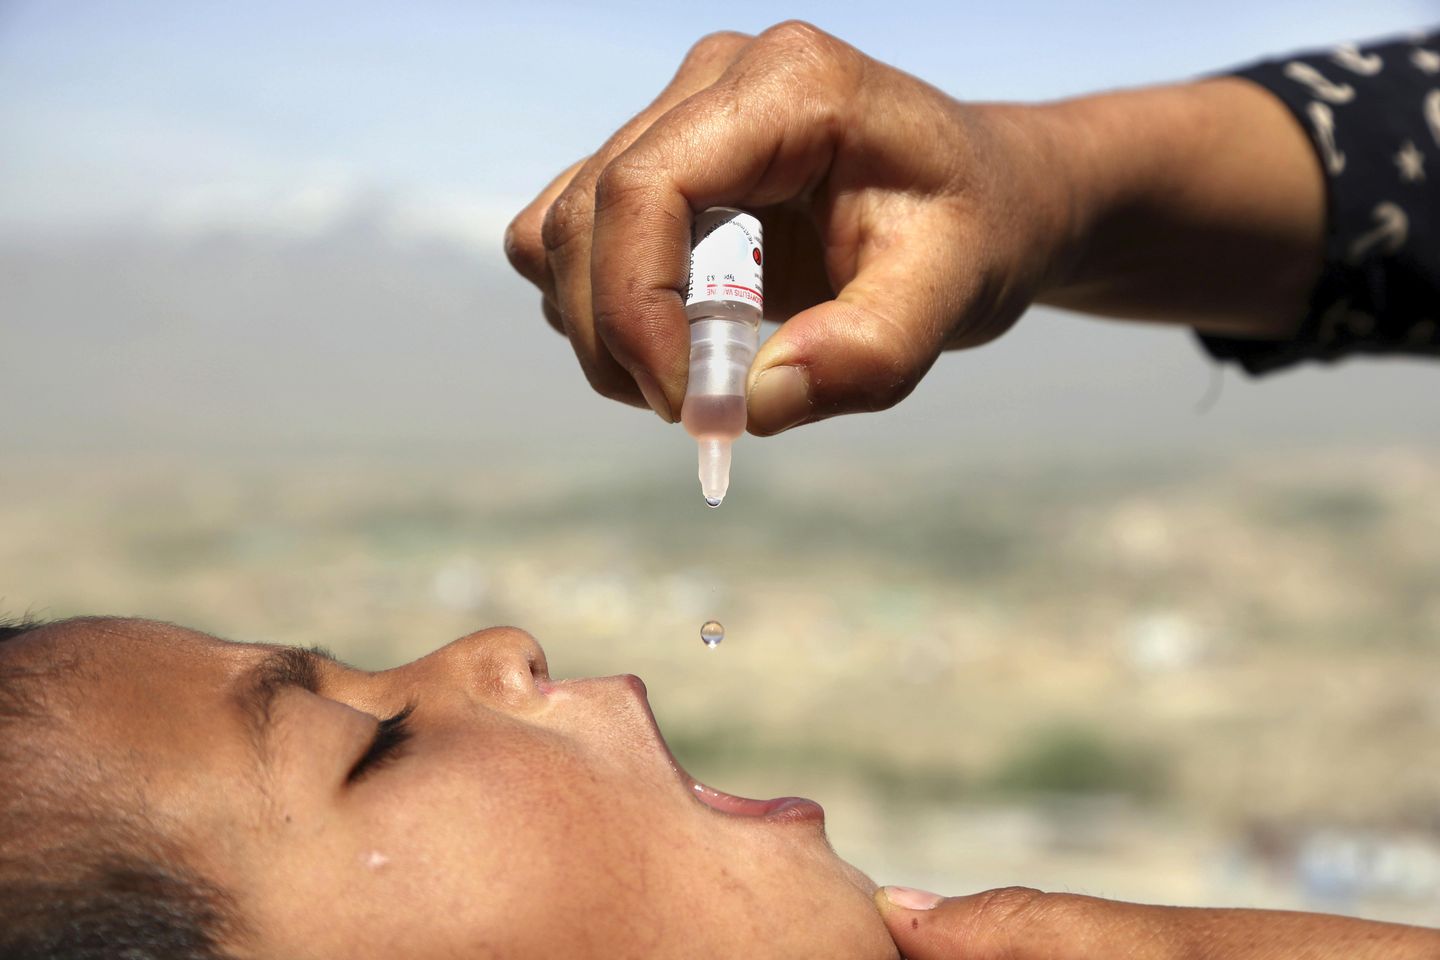 ABD, İngiltere ve İsrail'deki çocuk felci nadir görülen oral aşı riskini ortaya koyuyor